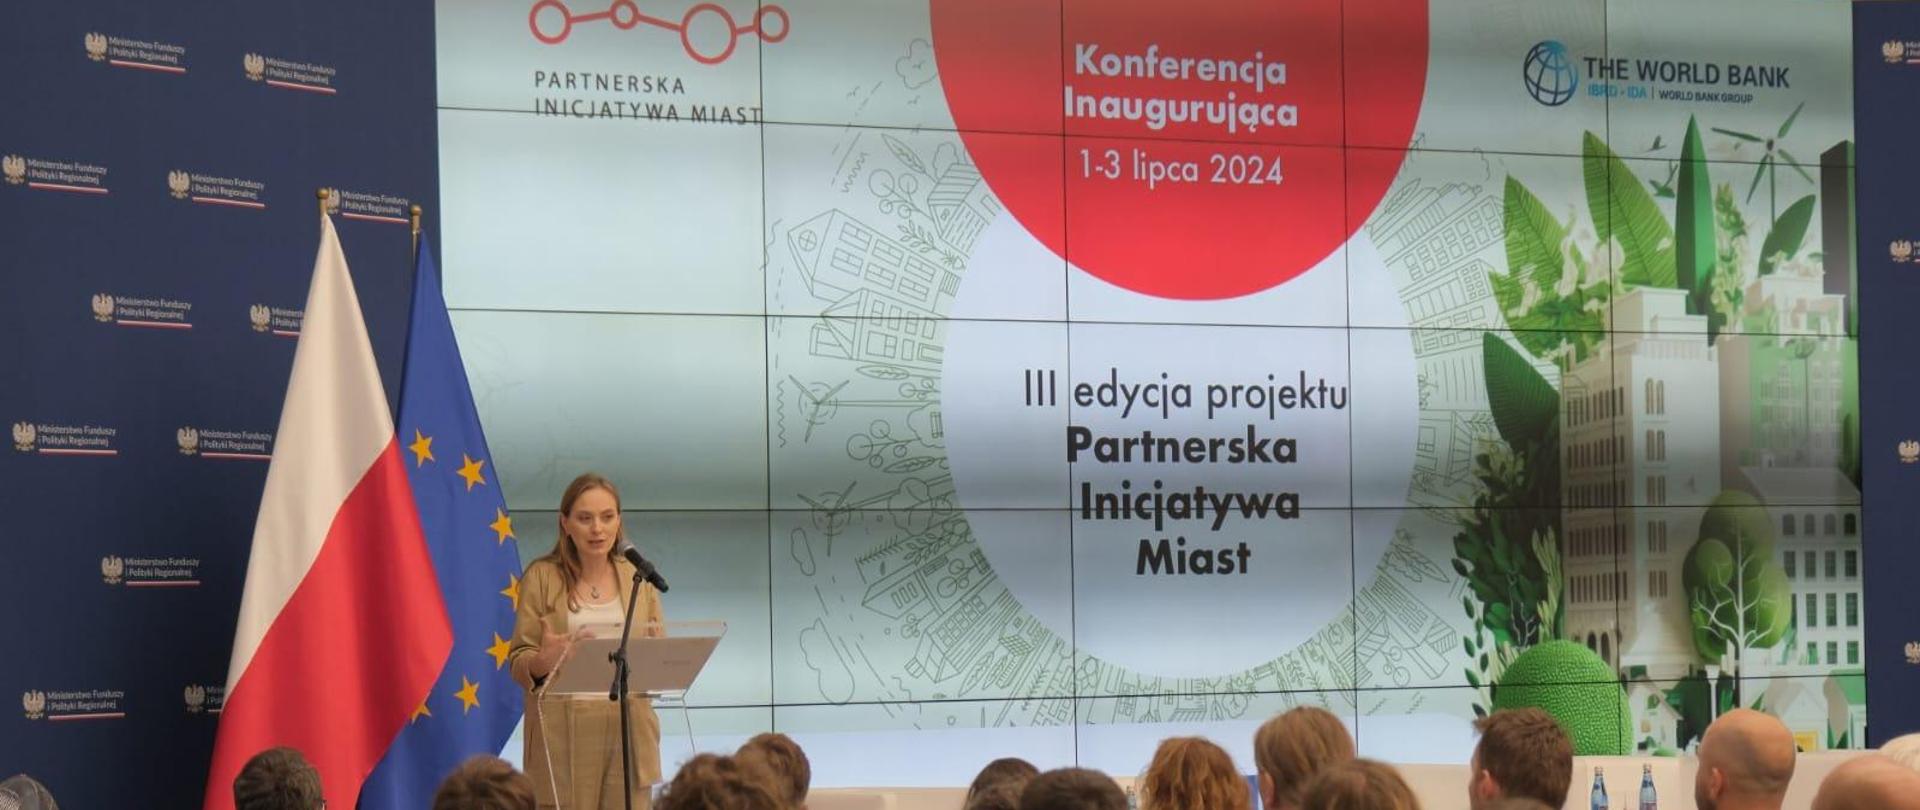 Minister Katarzyna Pełczyńska-Nałęcz stoi w oddali na scenie przy pulpicie i mówi do mikrofonu do zgromadzonych na sali osób. 